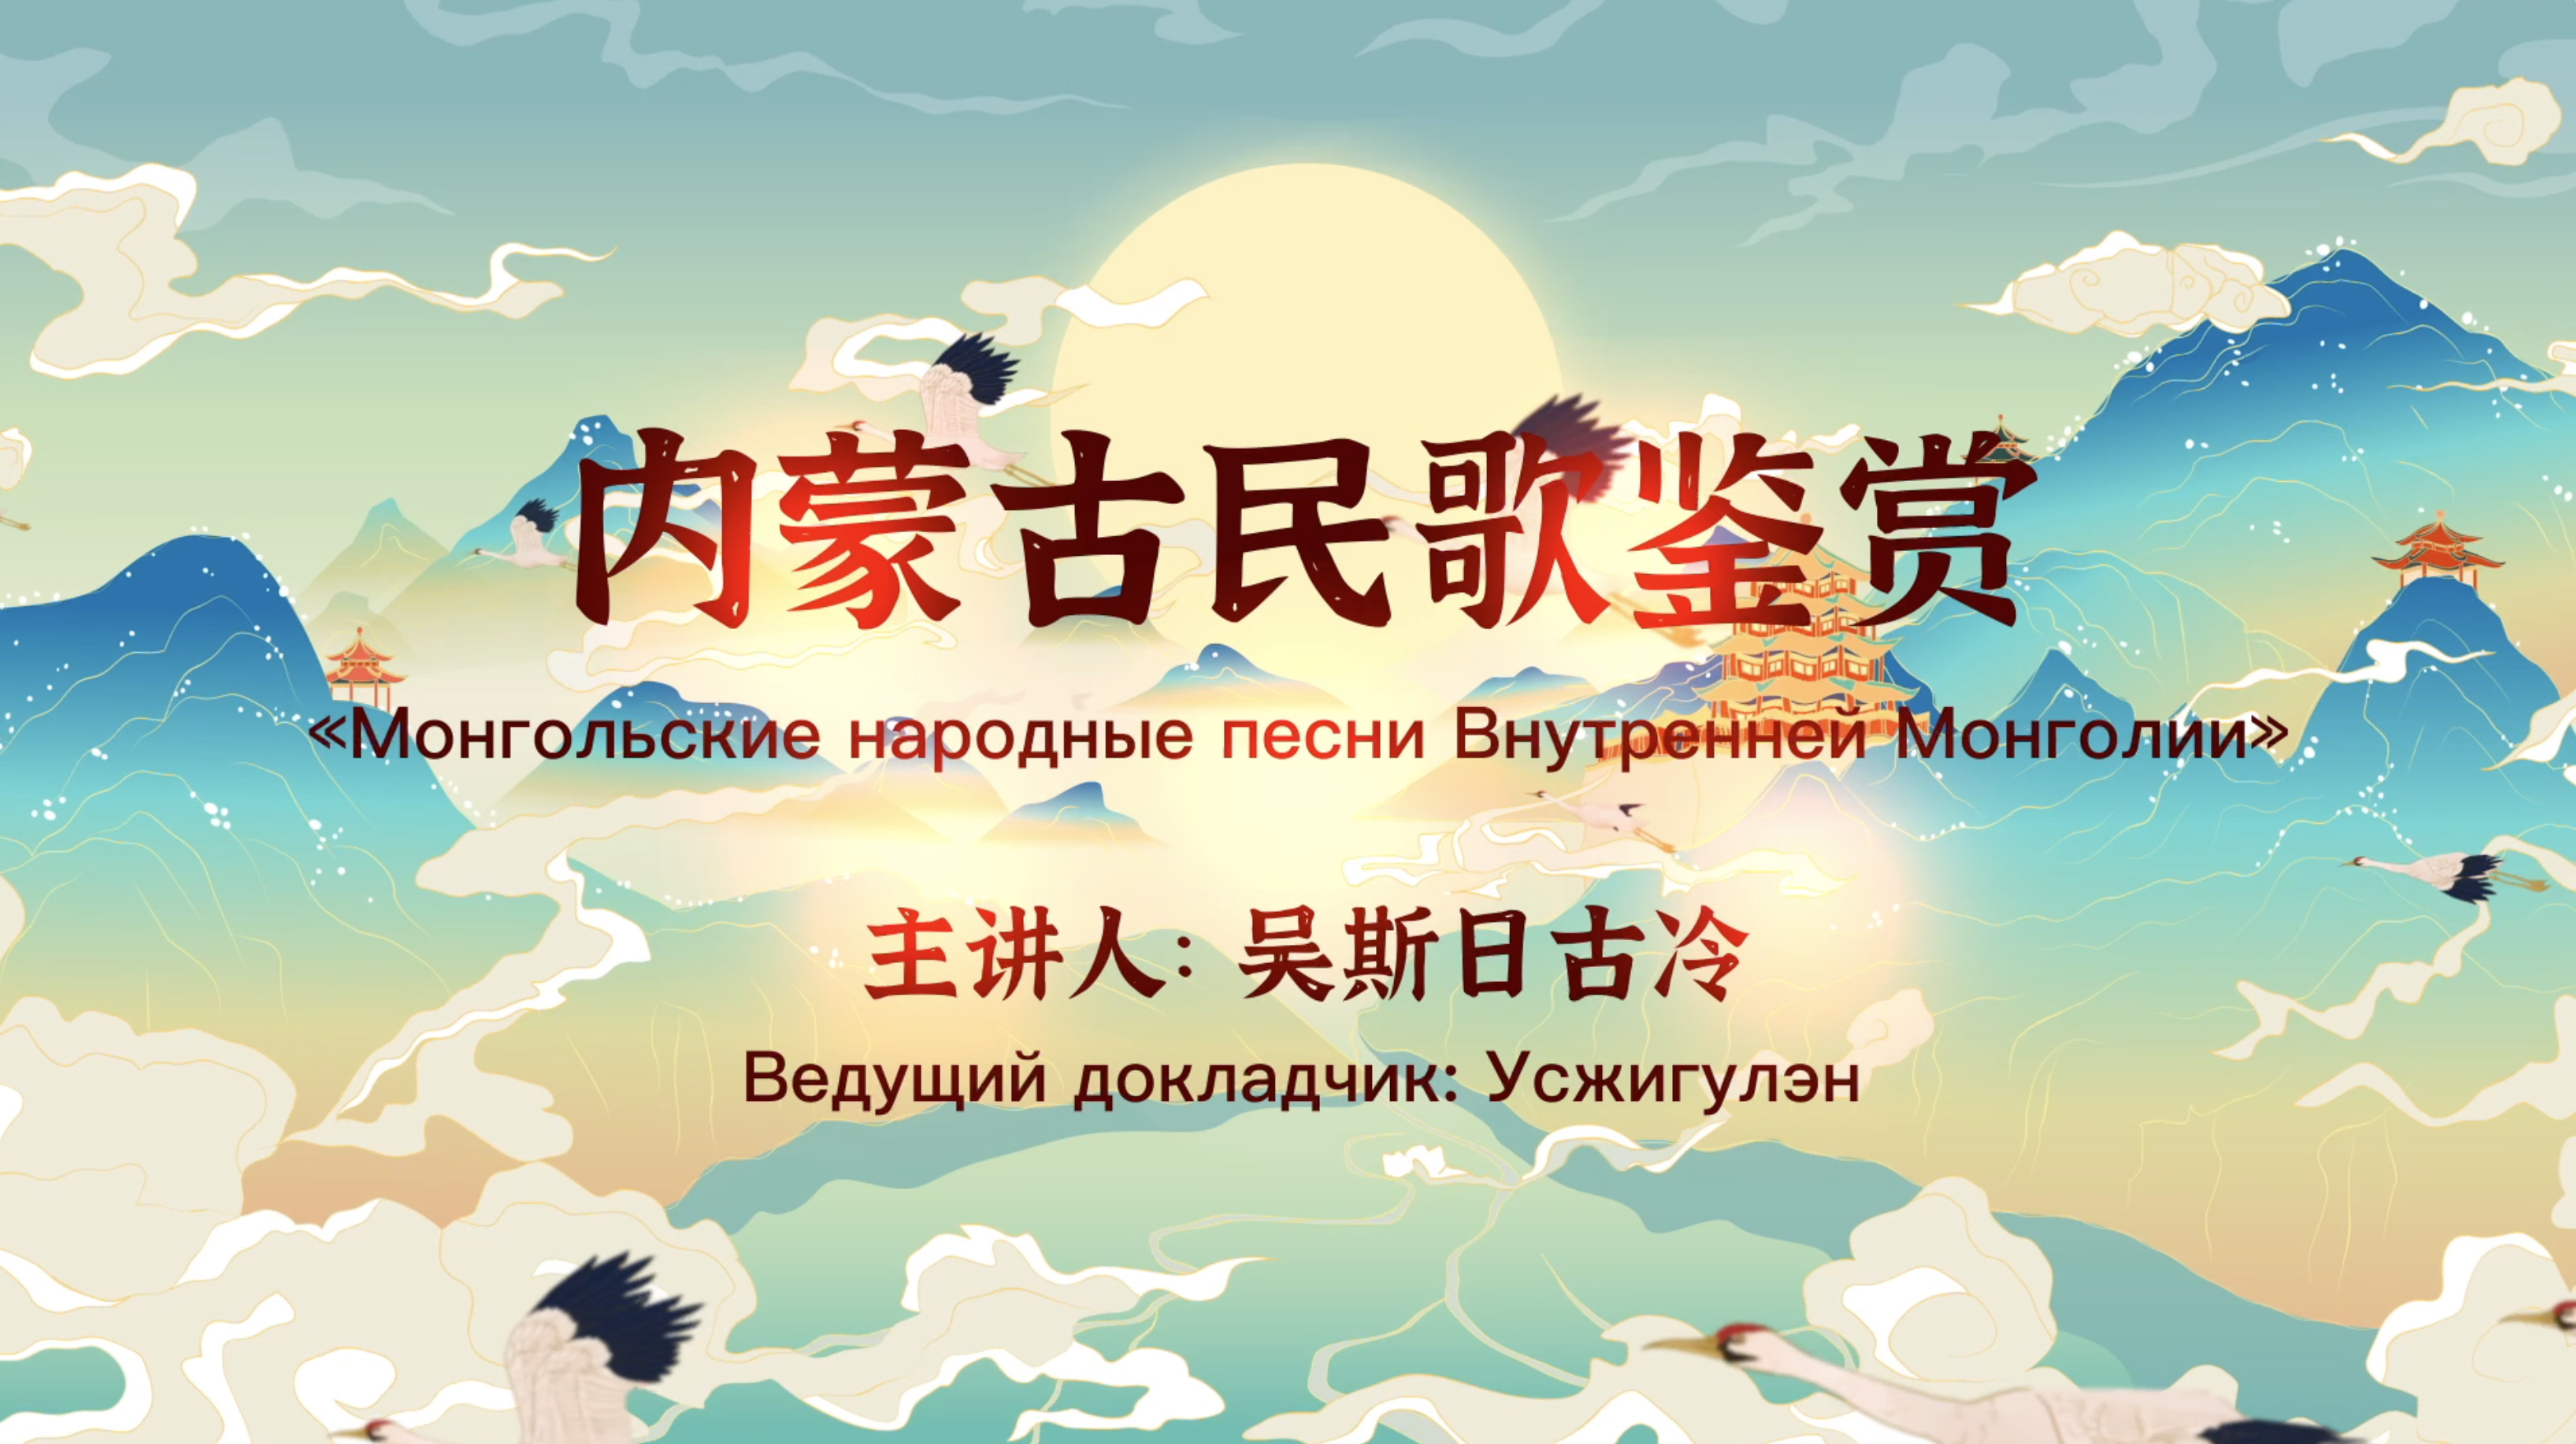 Оценка Внутренних Монгольских народных песен